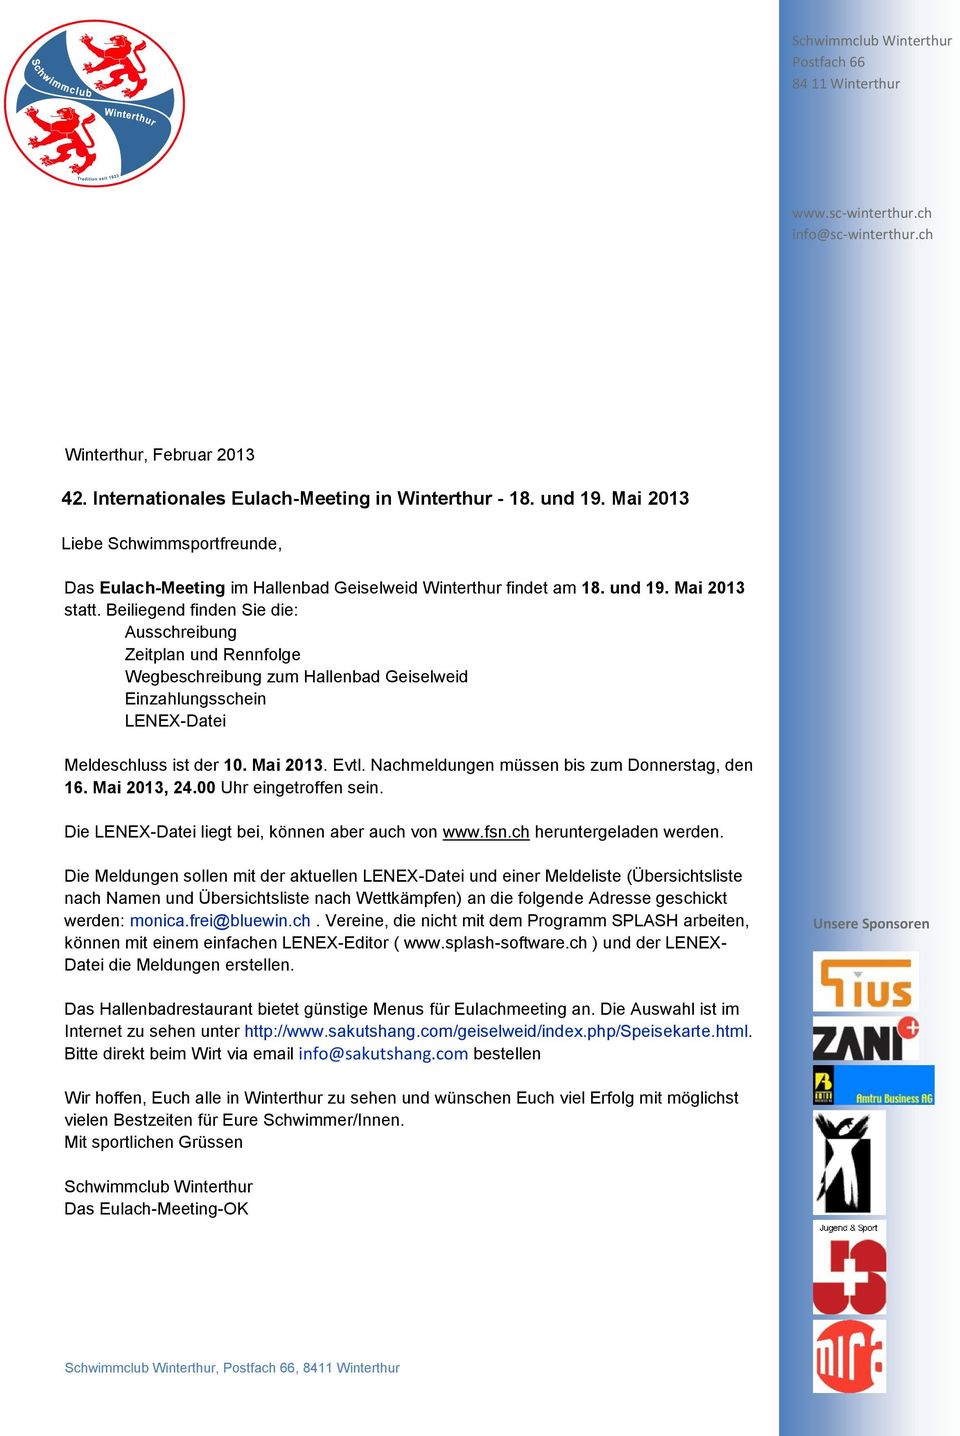 Nachmeldungen müssen bis zum Donnerstag, den 16. Mai 2013, 24.00 Uhr eingetroffen sein. Die LENEX-Datei liegt bei, können aber auch von www.fsn.ch heruntergeladen werden.